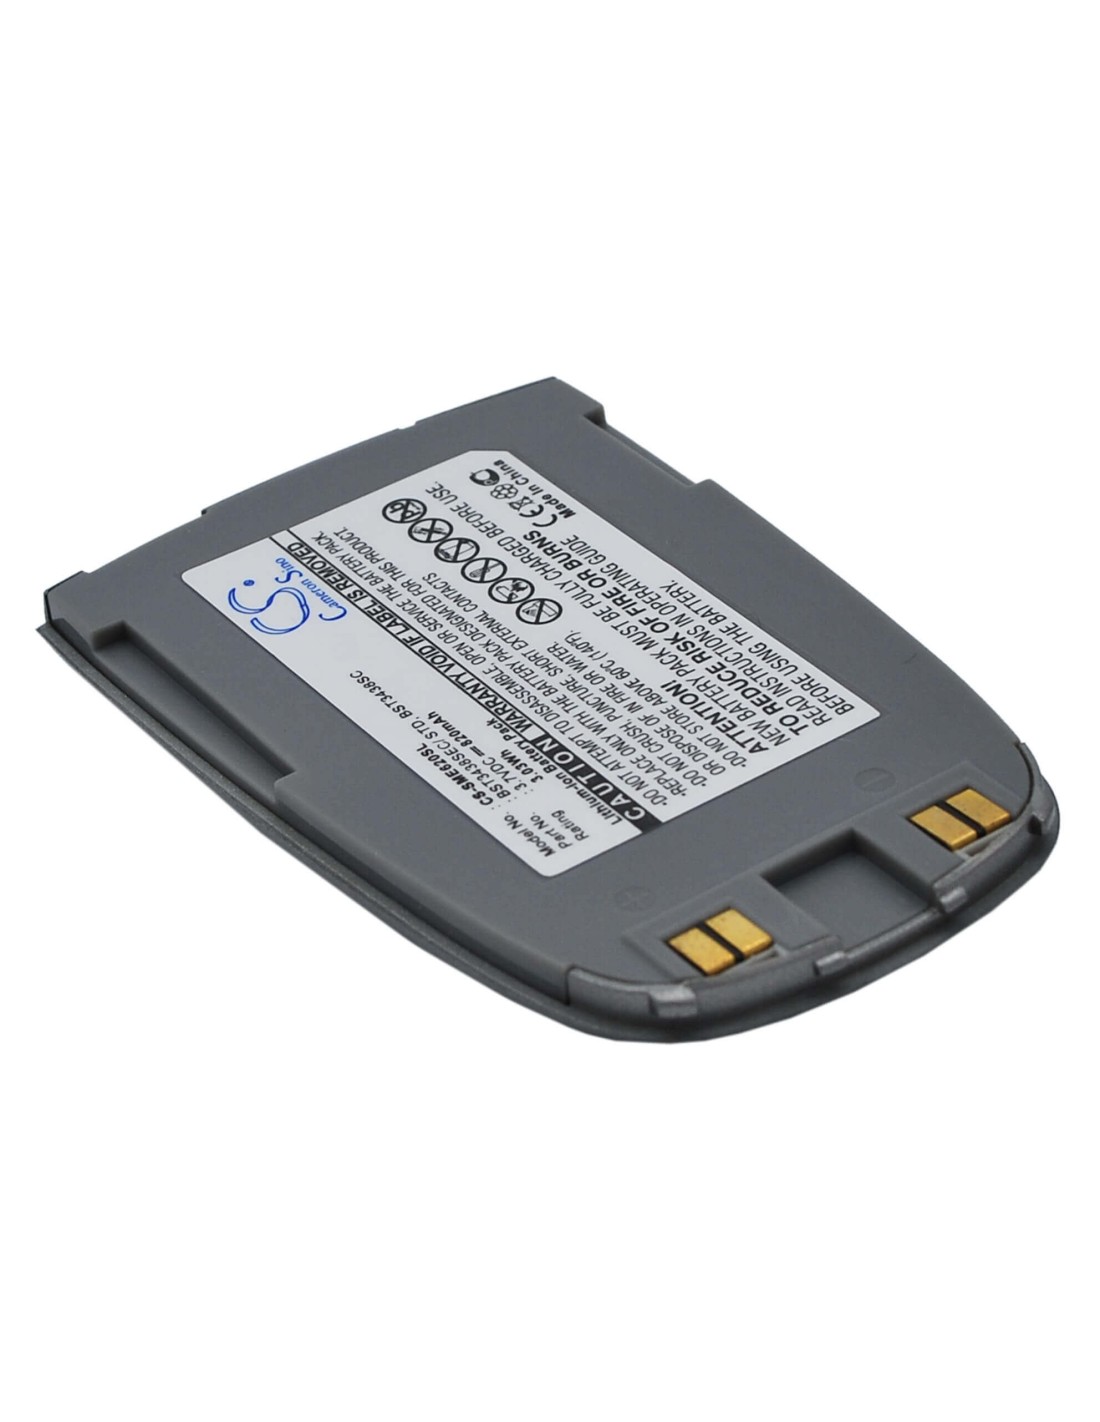 Battery for Samsung SGH-E628, SGH-E620 3.7V, 820mAh - 3.03Wh